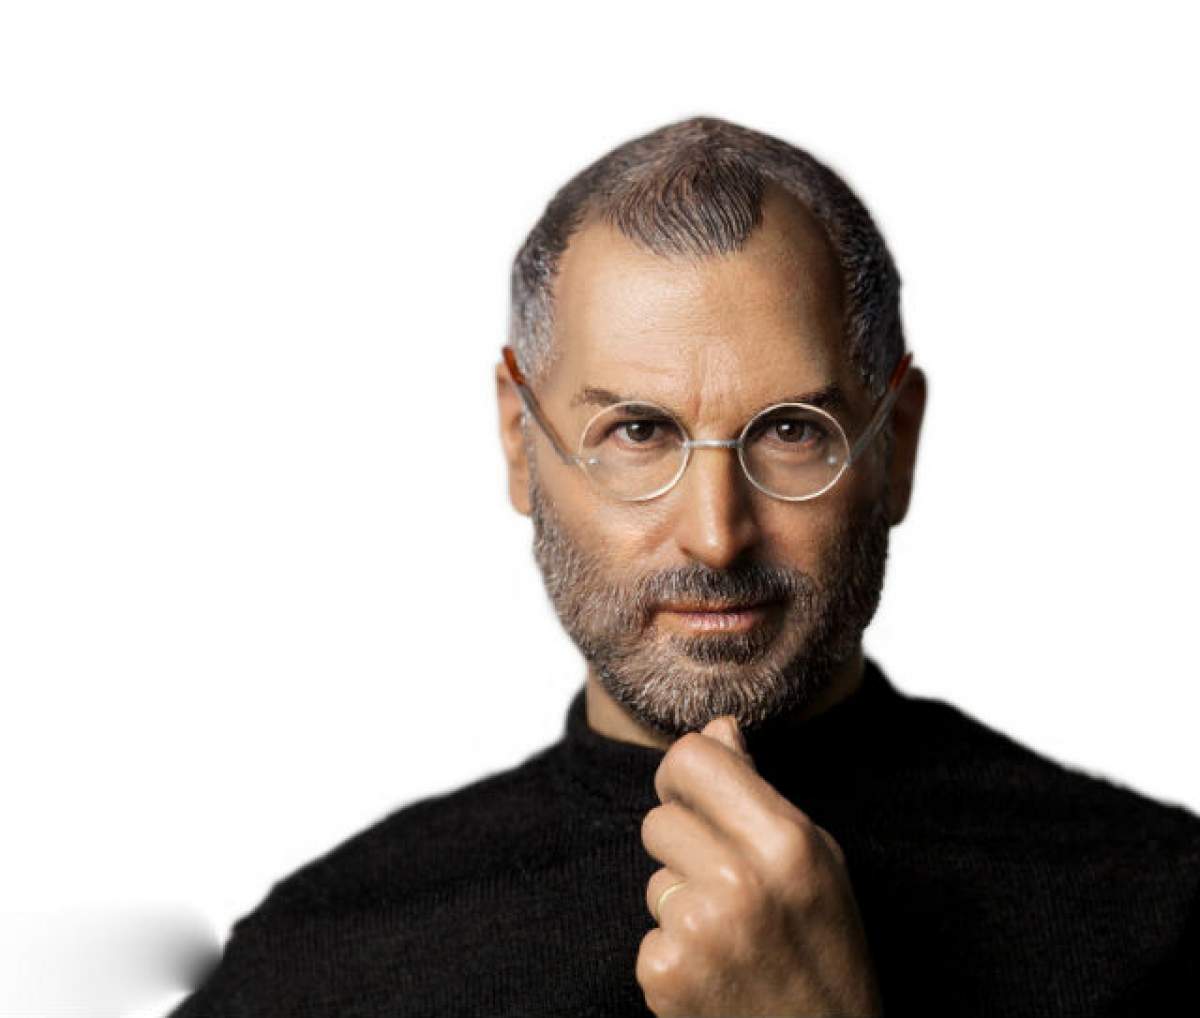 Astăzi se împlinesc 4 ani de la moartea lui Steve Jobs, copilul nedorit, dat spre adopţie, care a revoluţionat tehnologia. Povestea geniului căruia viaţa părea că nu-i dă vreo şansă